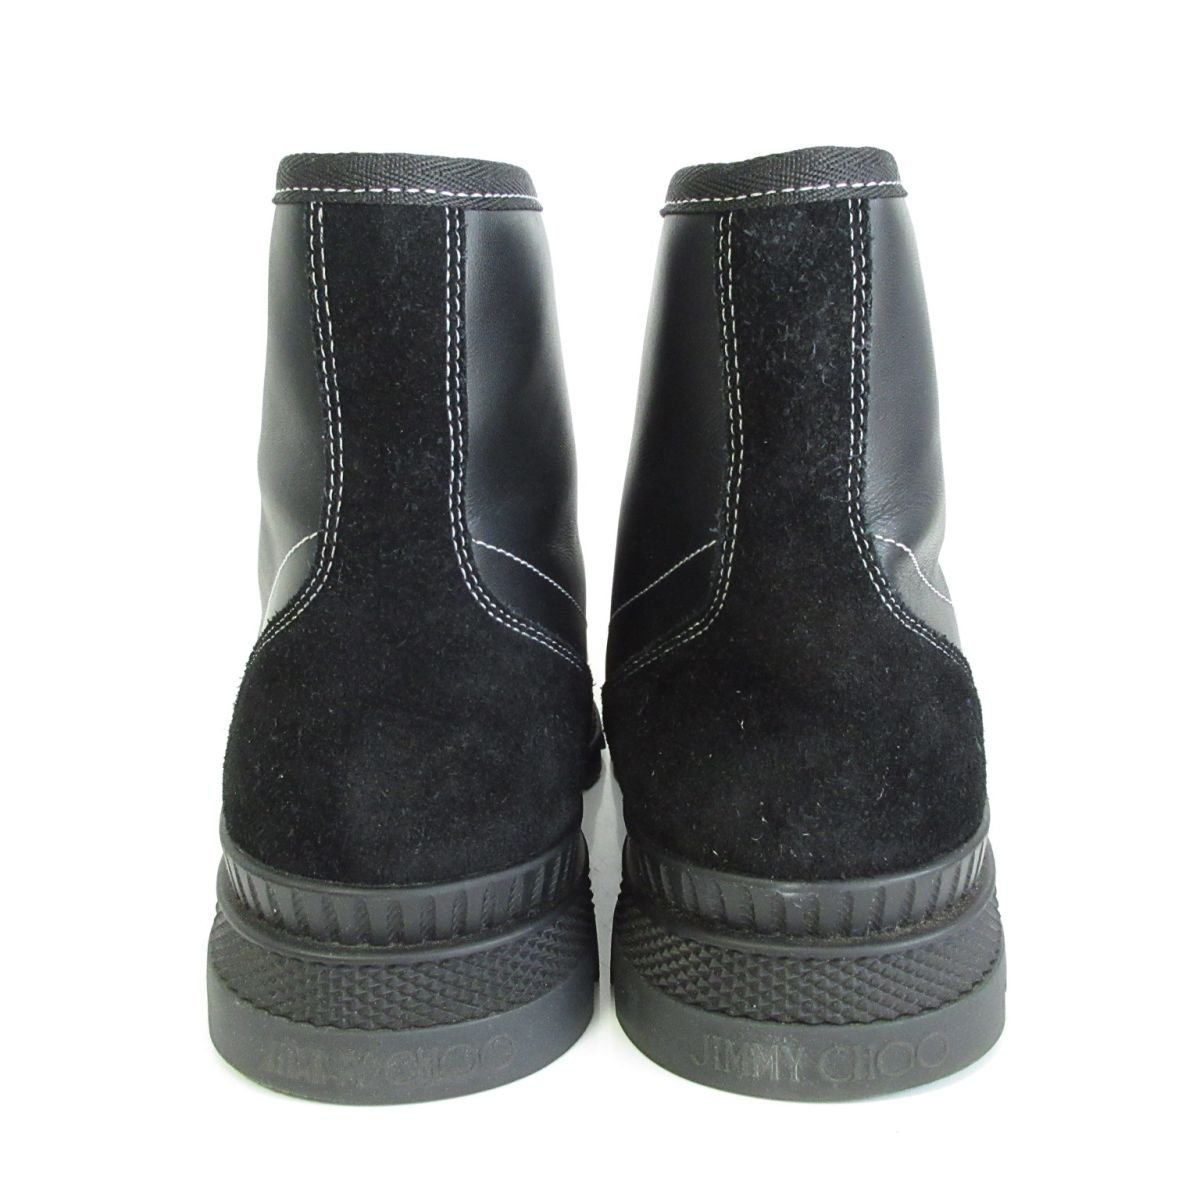 新品同様 JIMMY CHOO ジミーチュウ NORD sneaker boots レザー×スエード ラバーソール ハイカットスニーカー ブーツ 41 約26cm ブラック_画像6